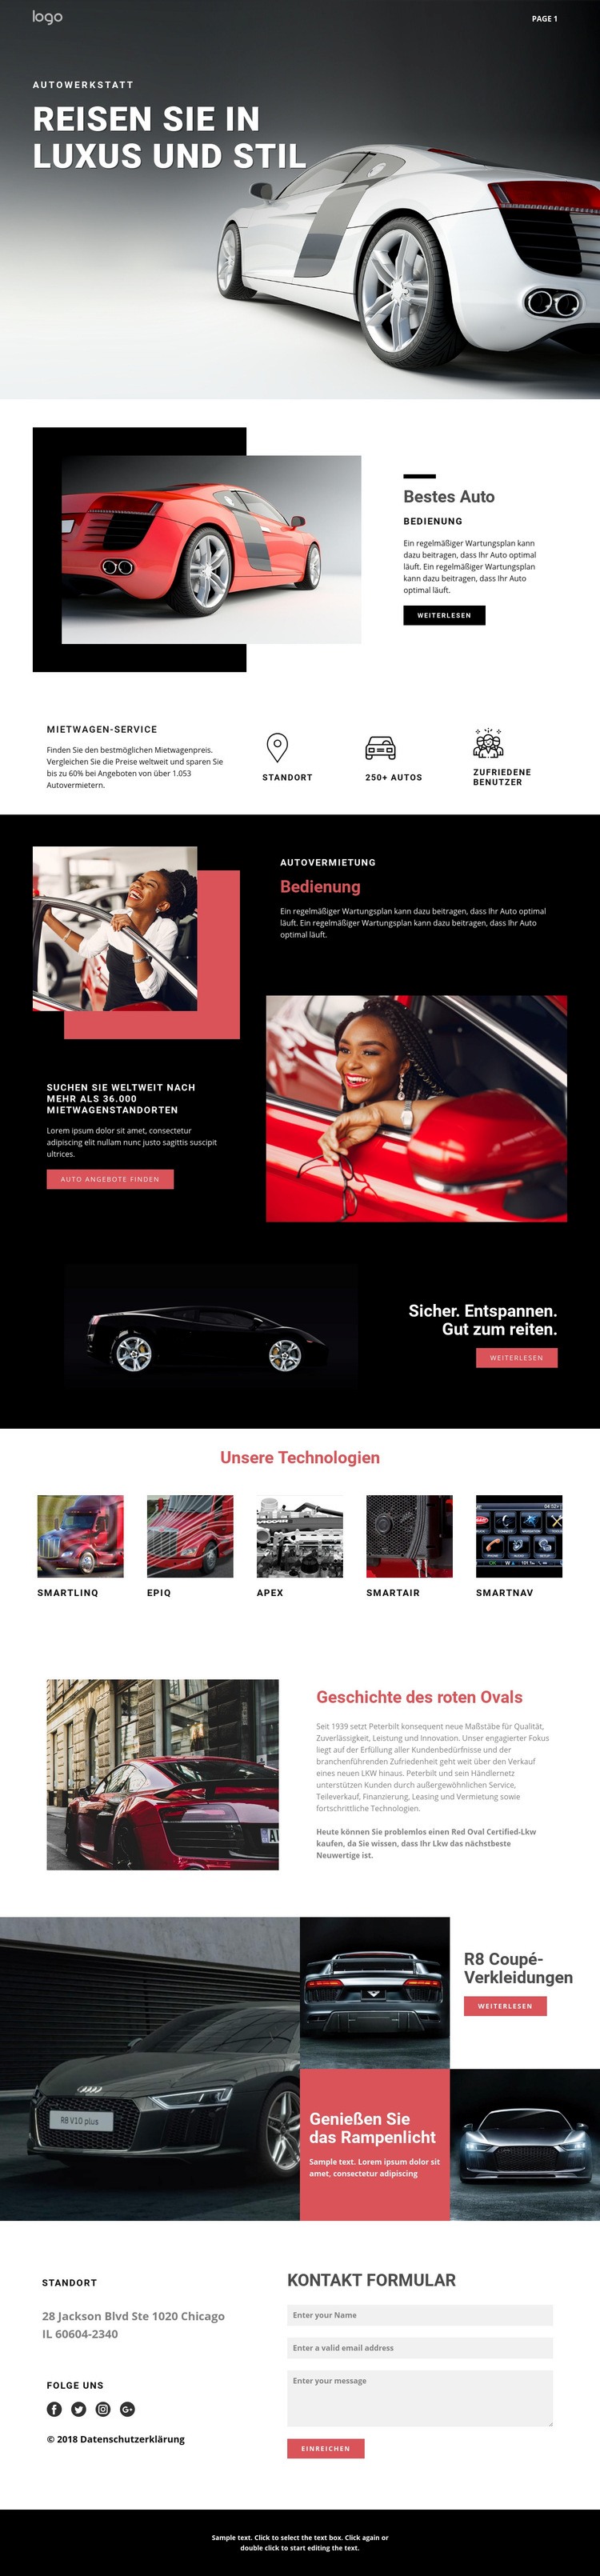 Reisen in Luxusautos Website design